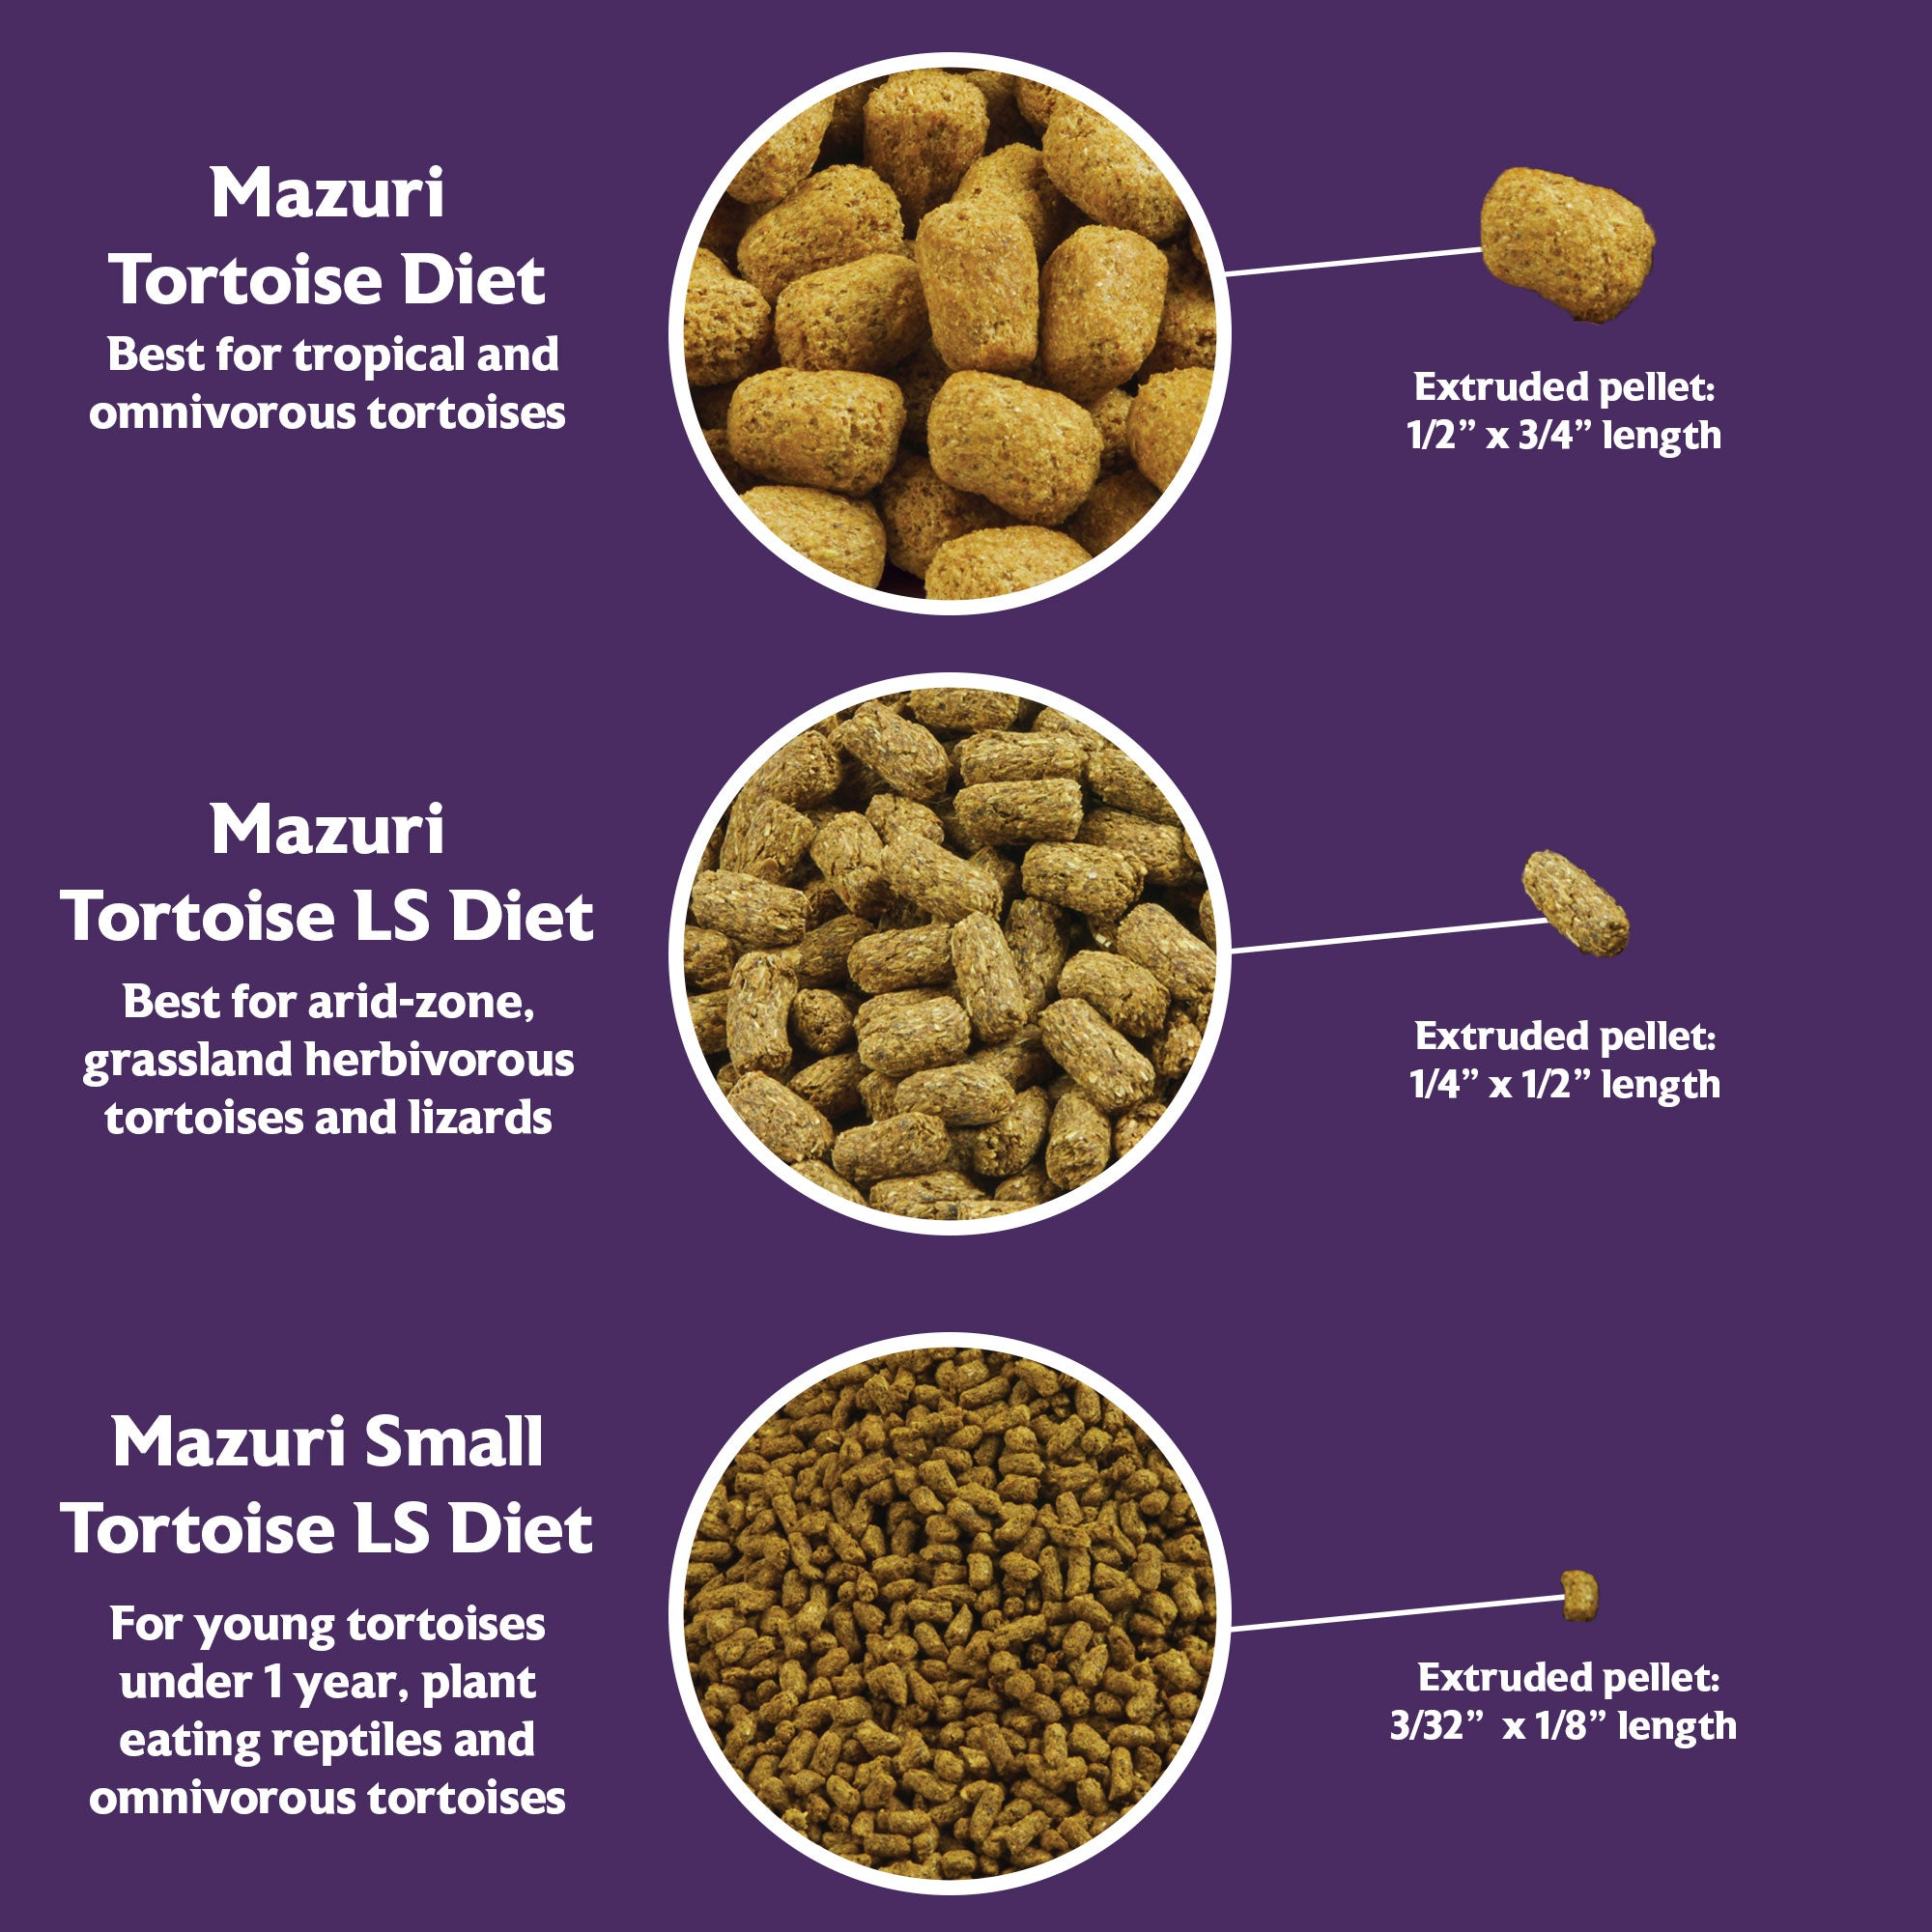 Mazuri Tortoise diet comparison chart for pellet size